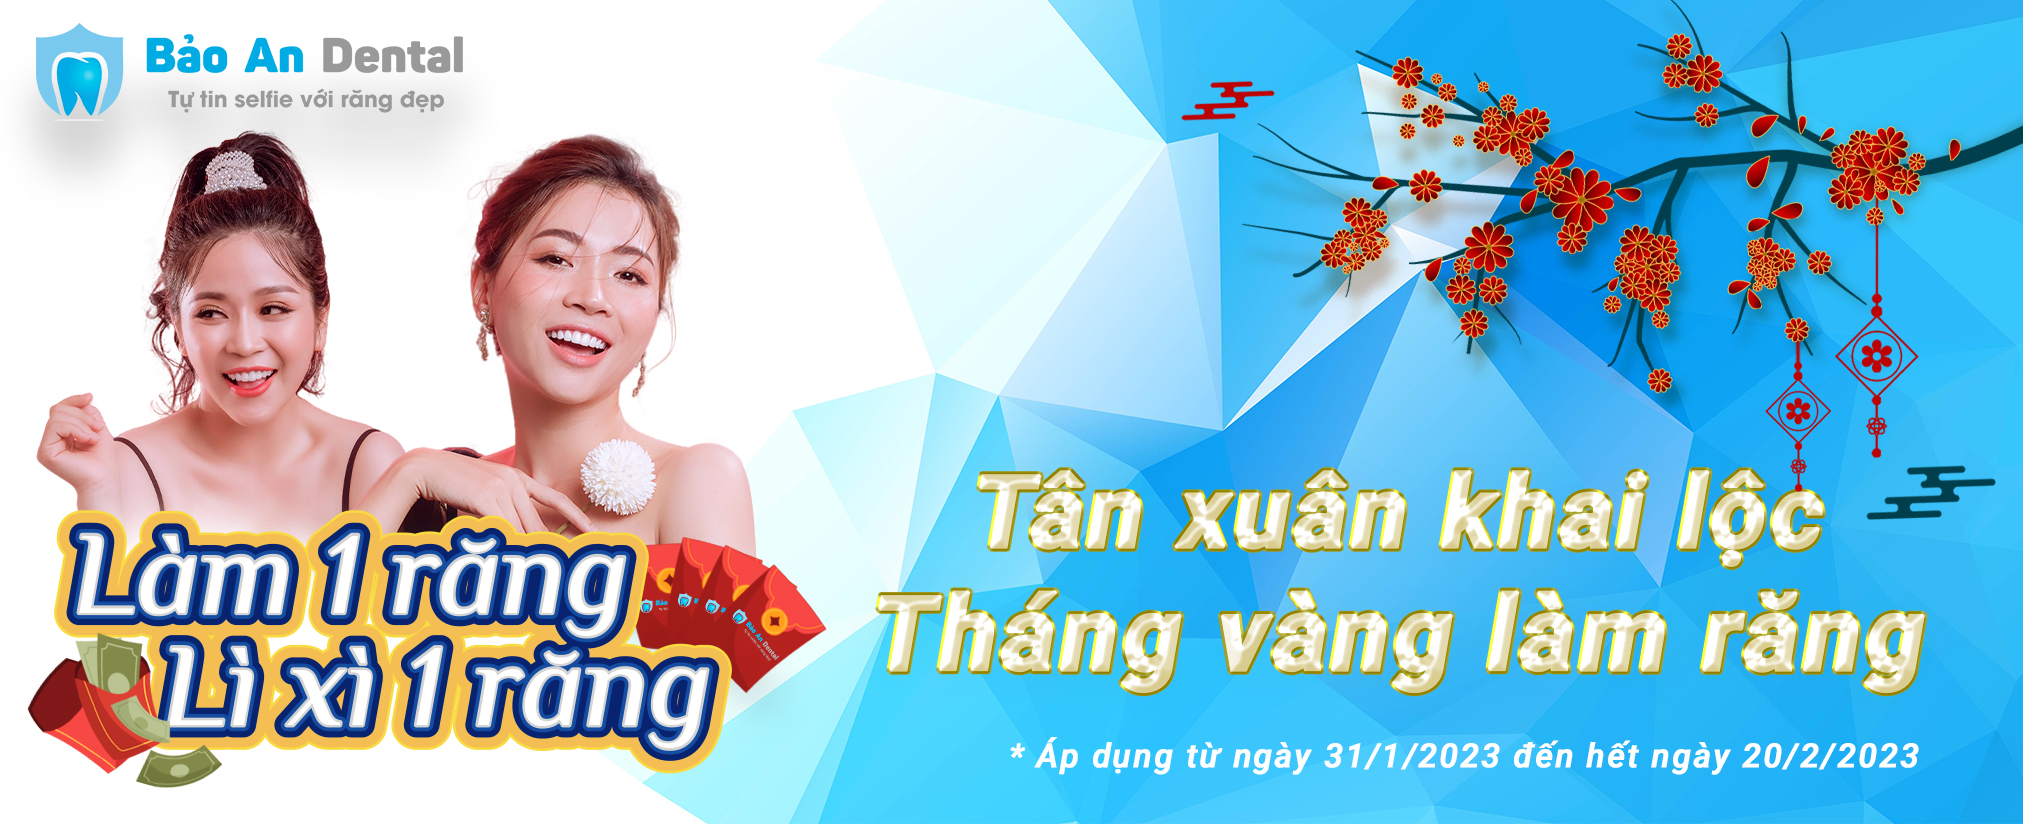 Tân Xuân Khai Lộc - Tháng Vàng làm răng 